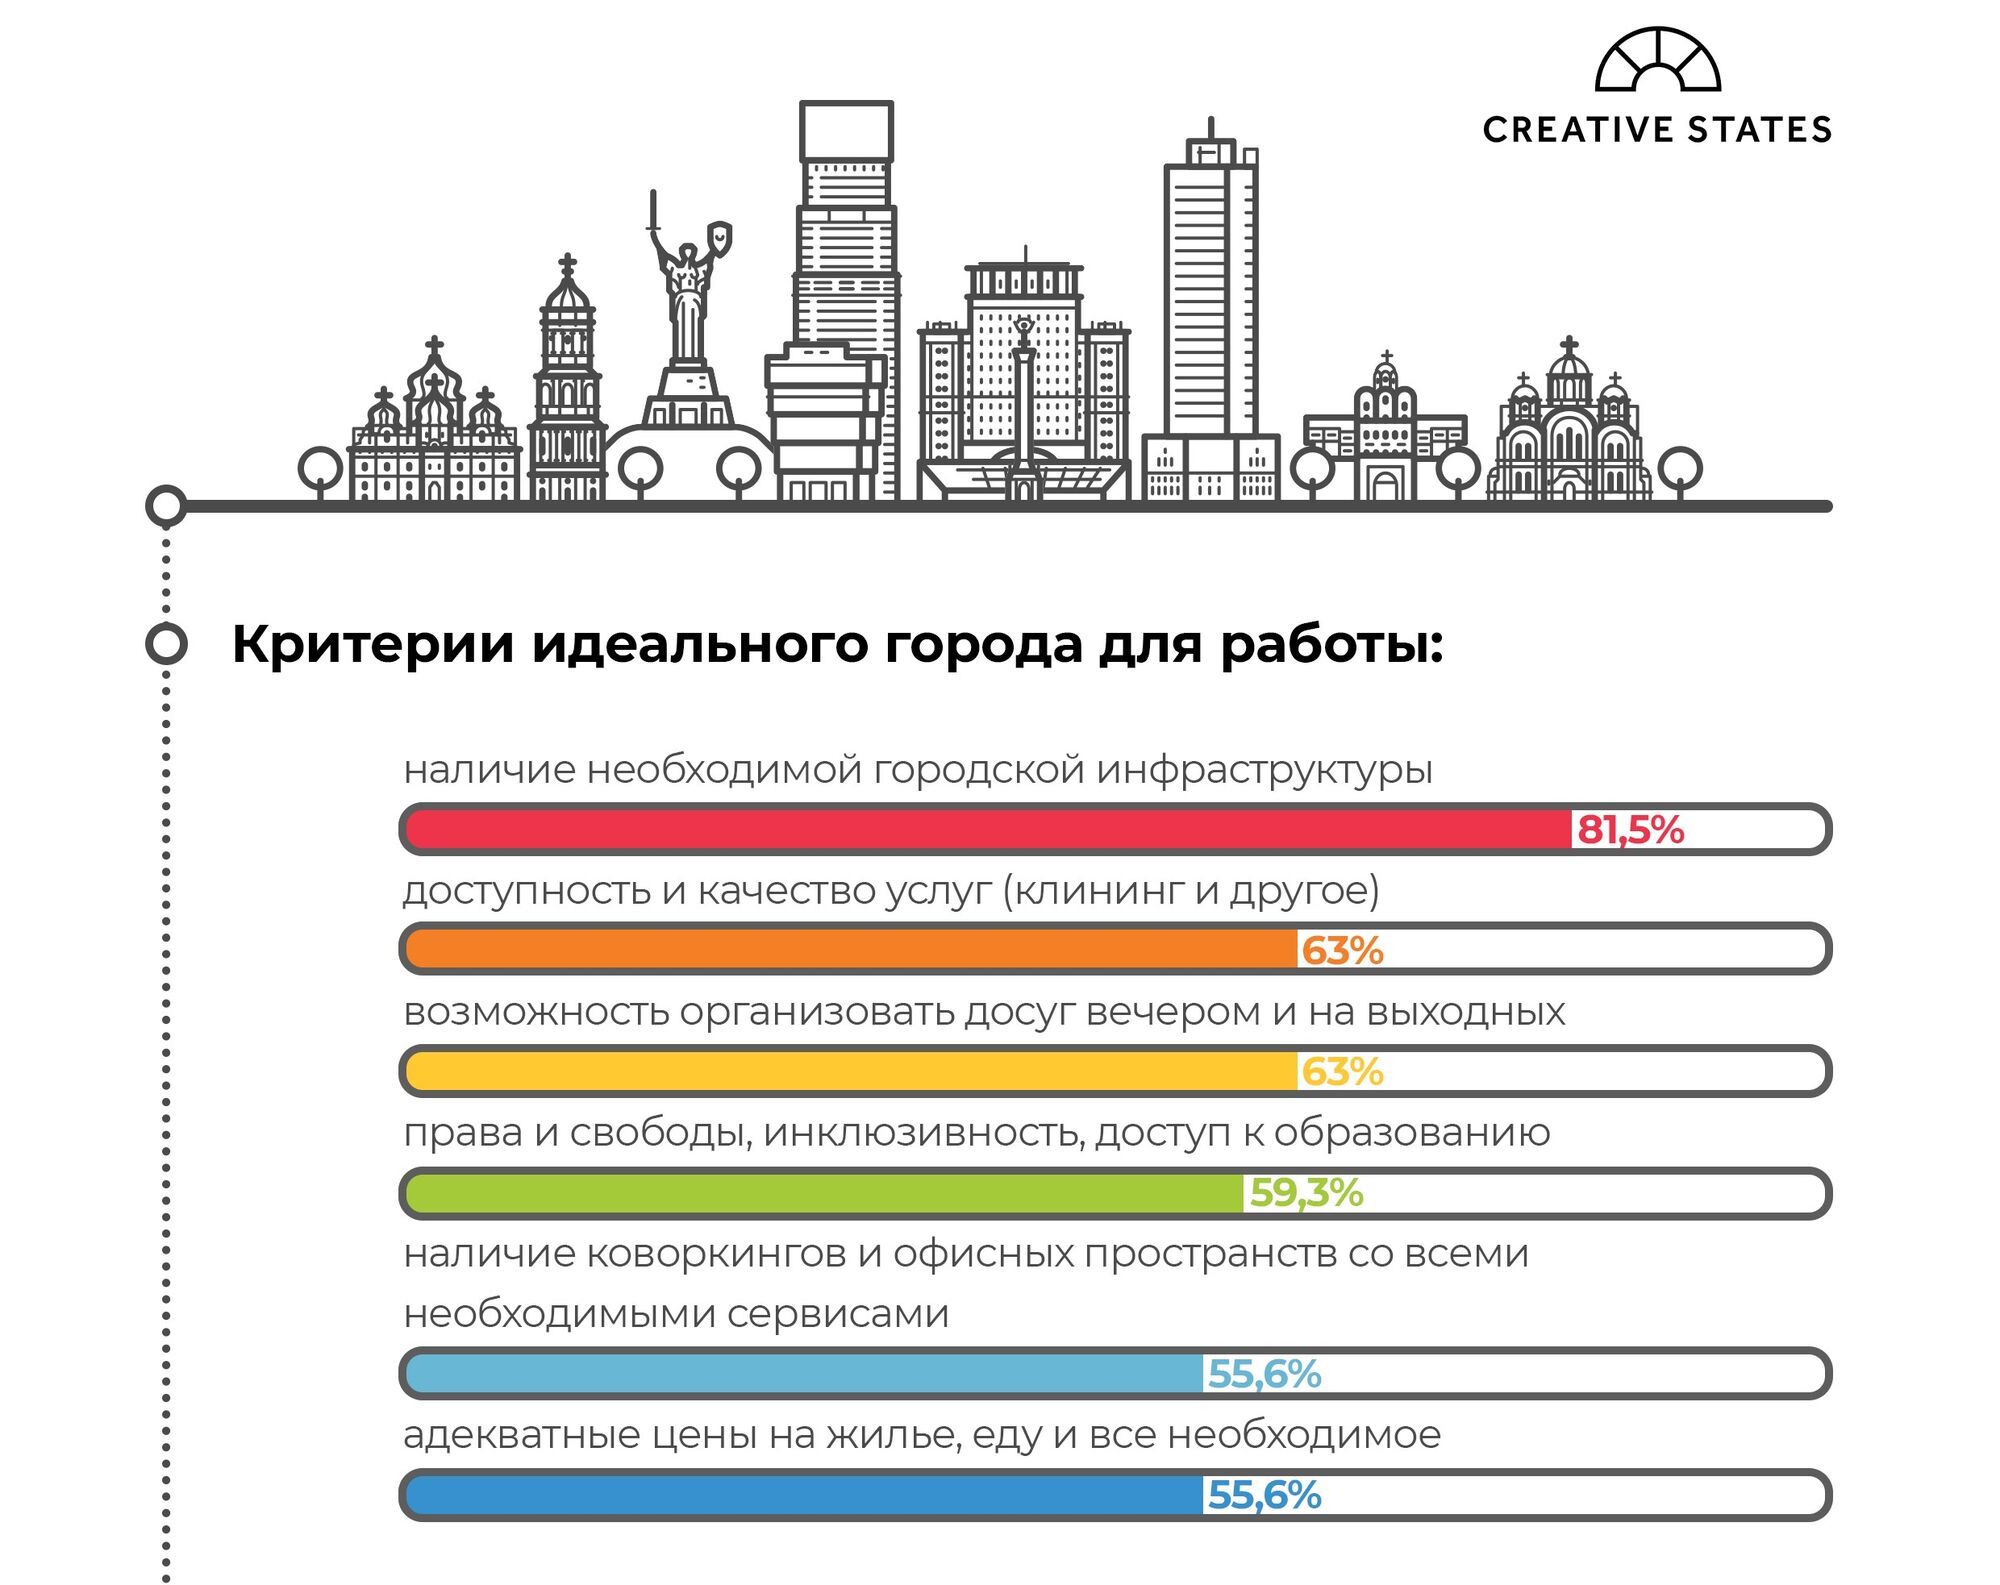 Чому експати люблять Київ — дослідження Creative States